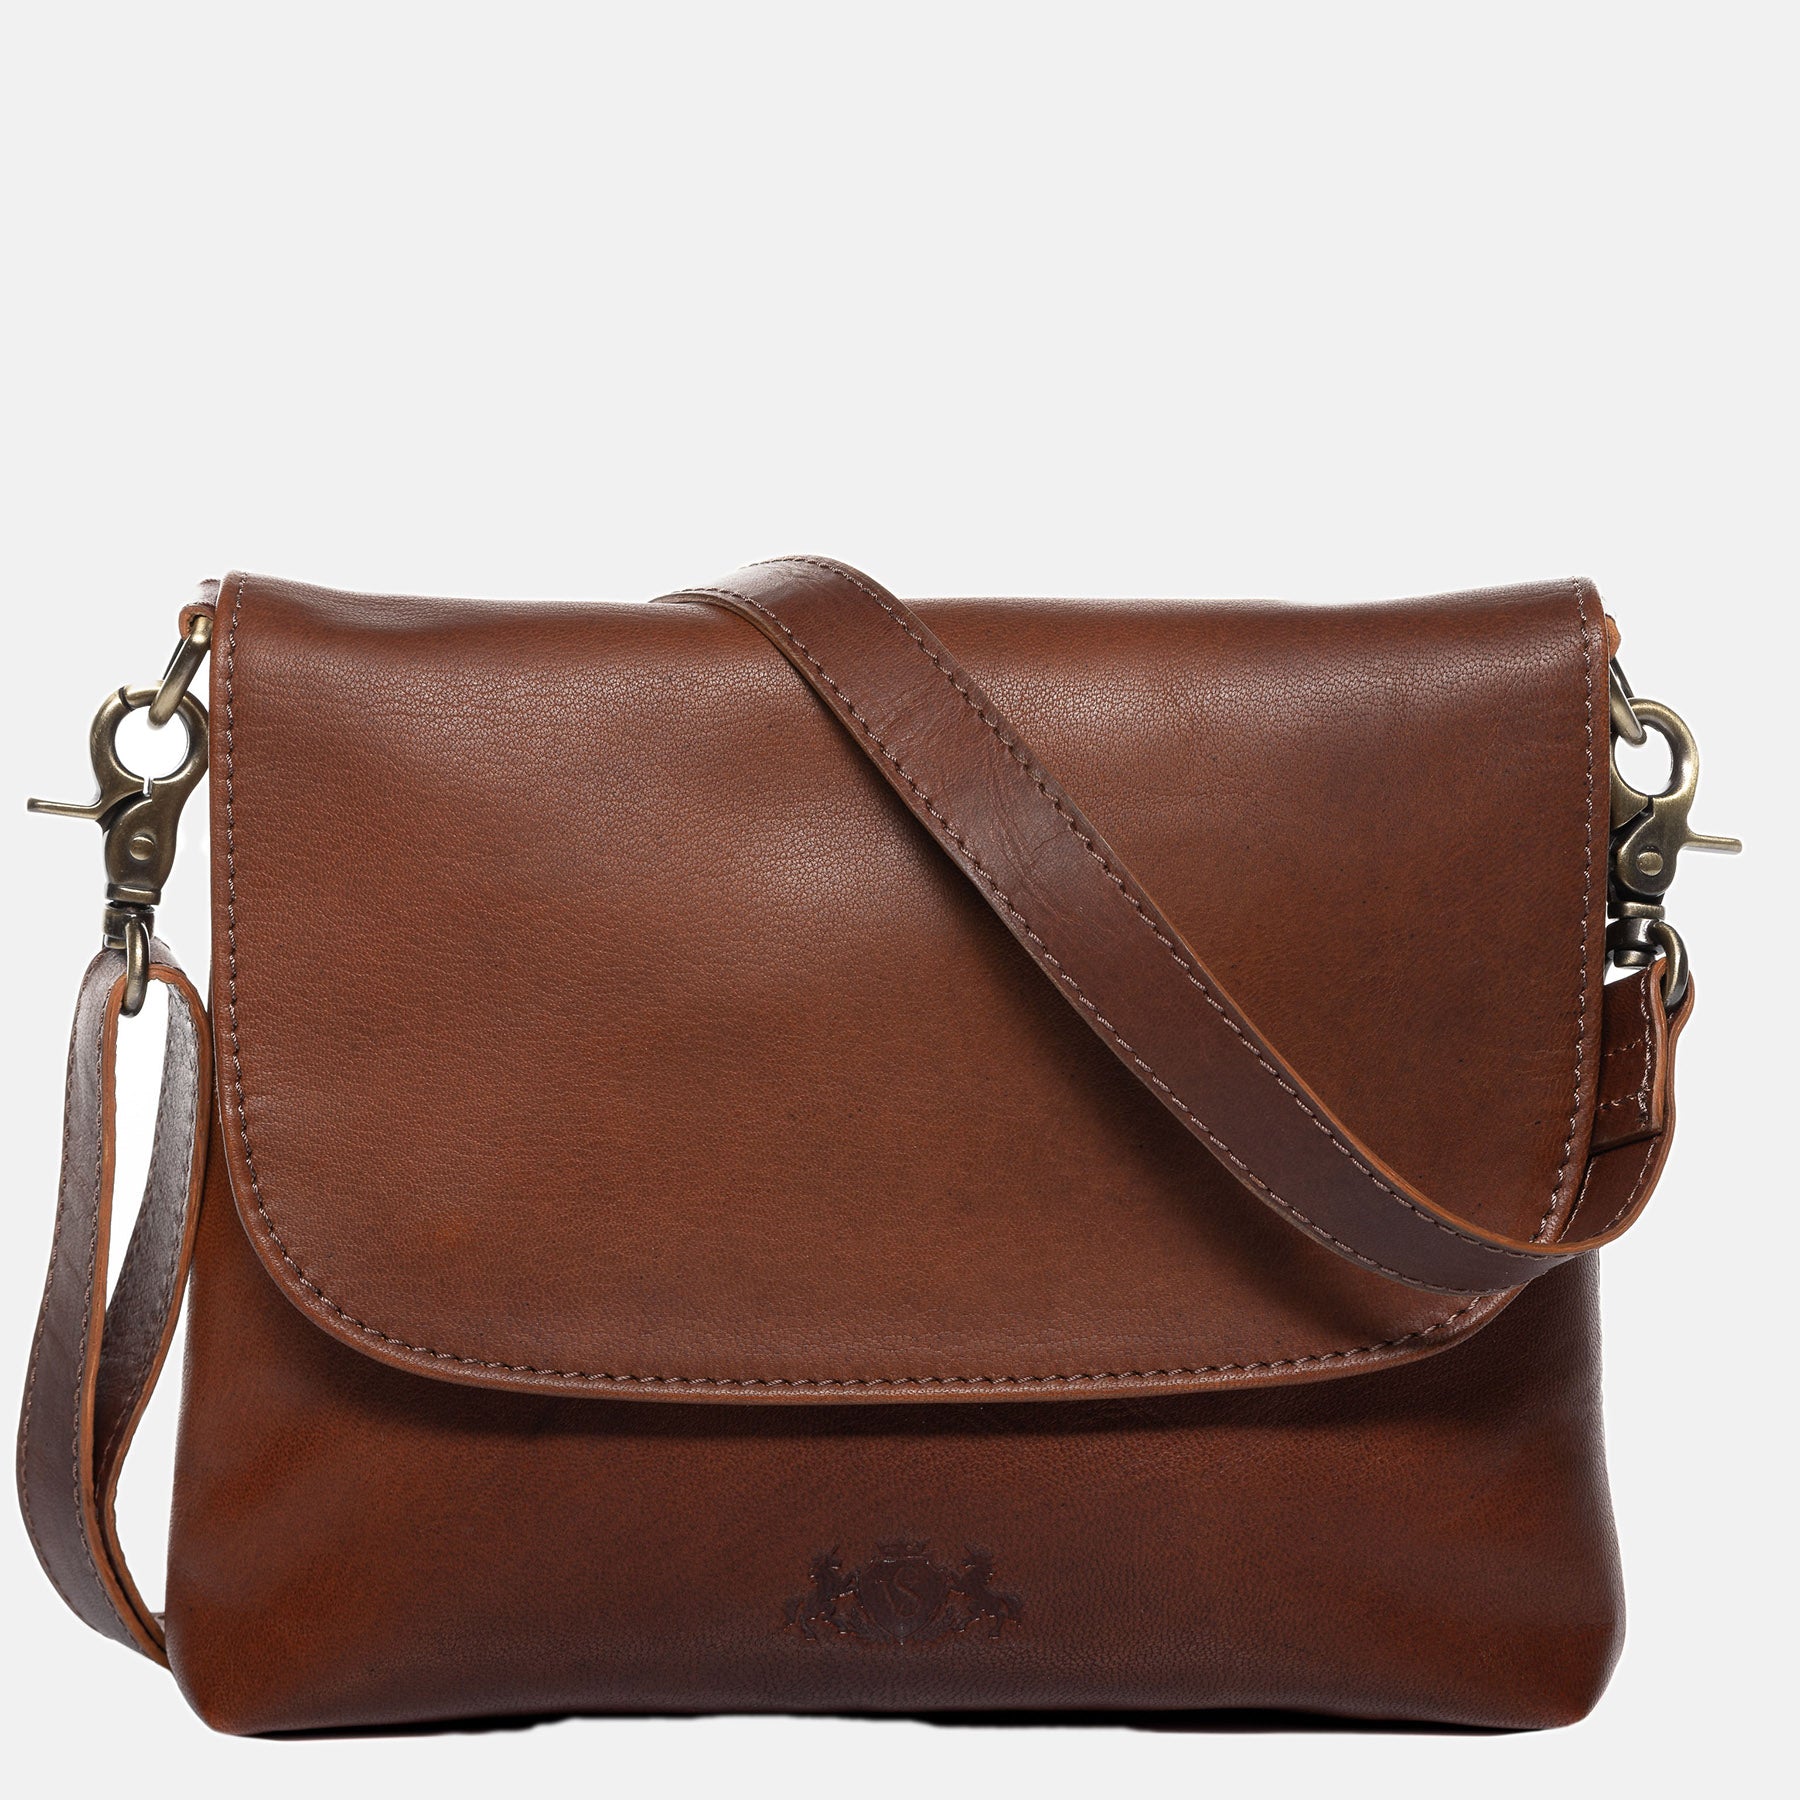 Shoulder bag LINA smooth leather light brown